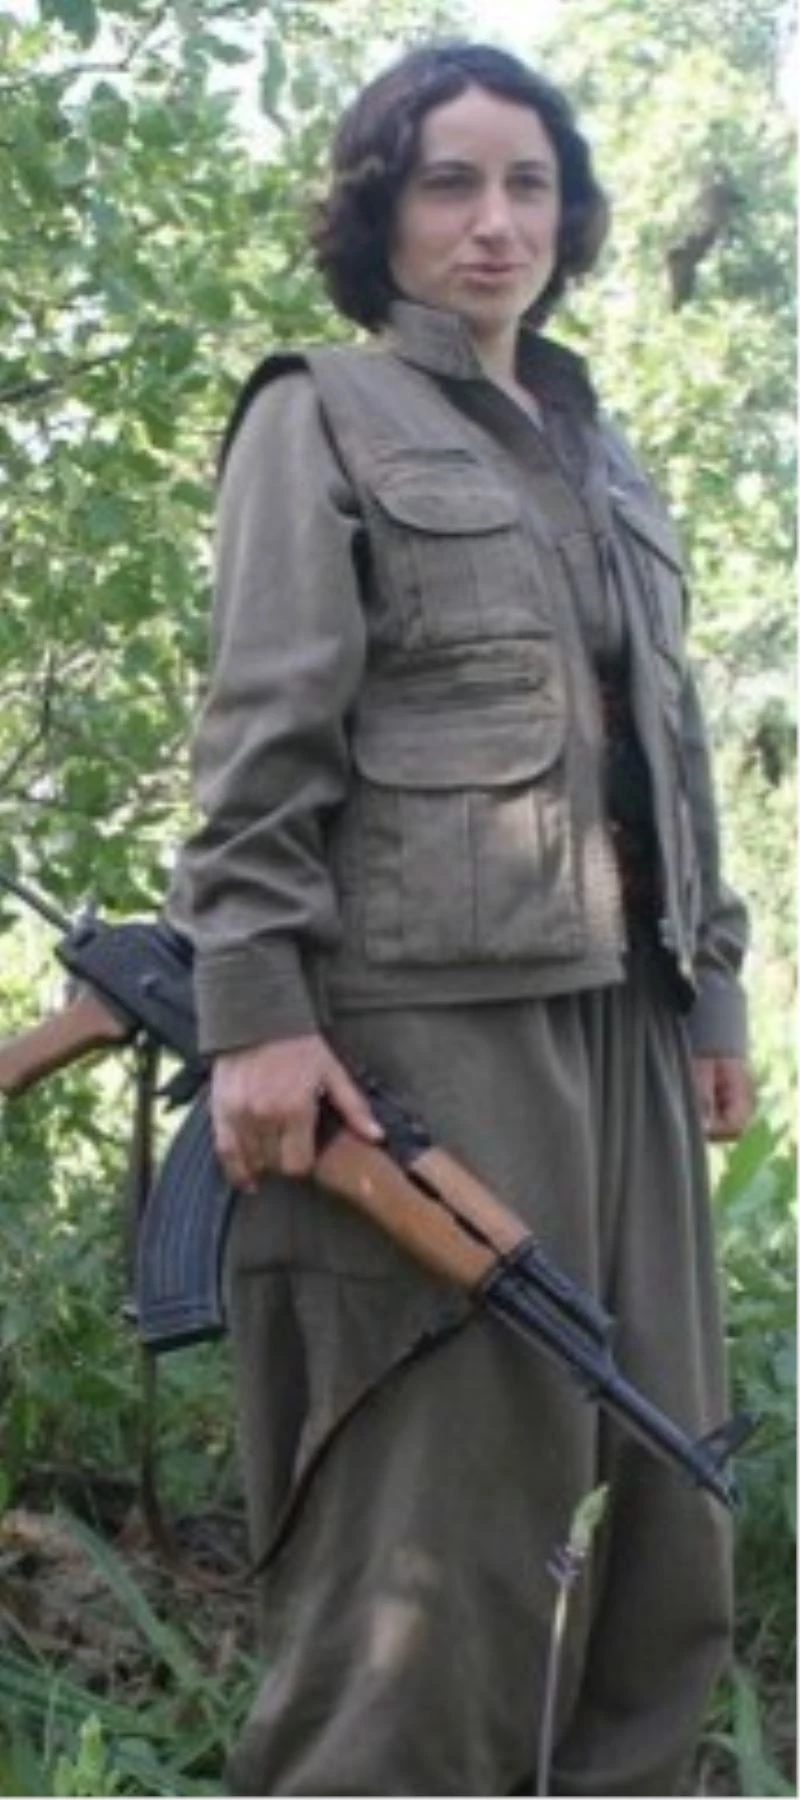 Siirt’te PKK/KCK terör örgütü mensubu adına oy kullanan şahıs yakalandı
